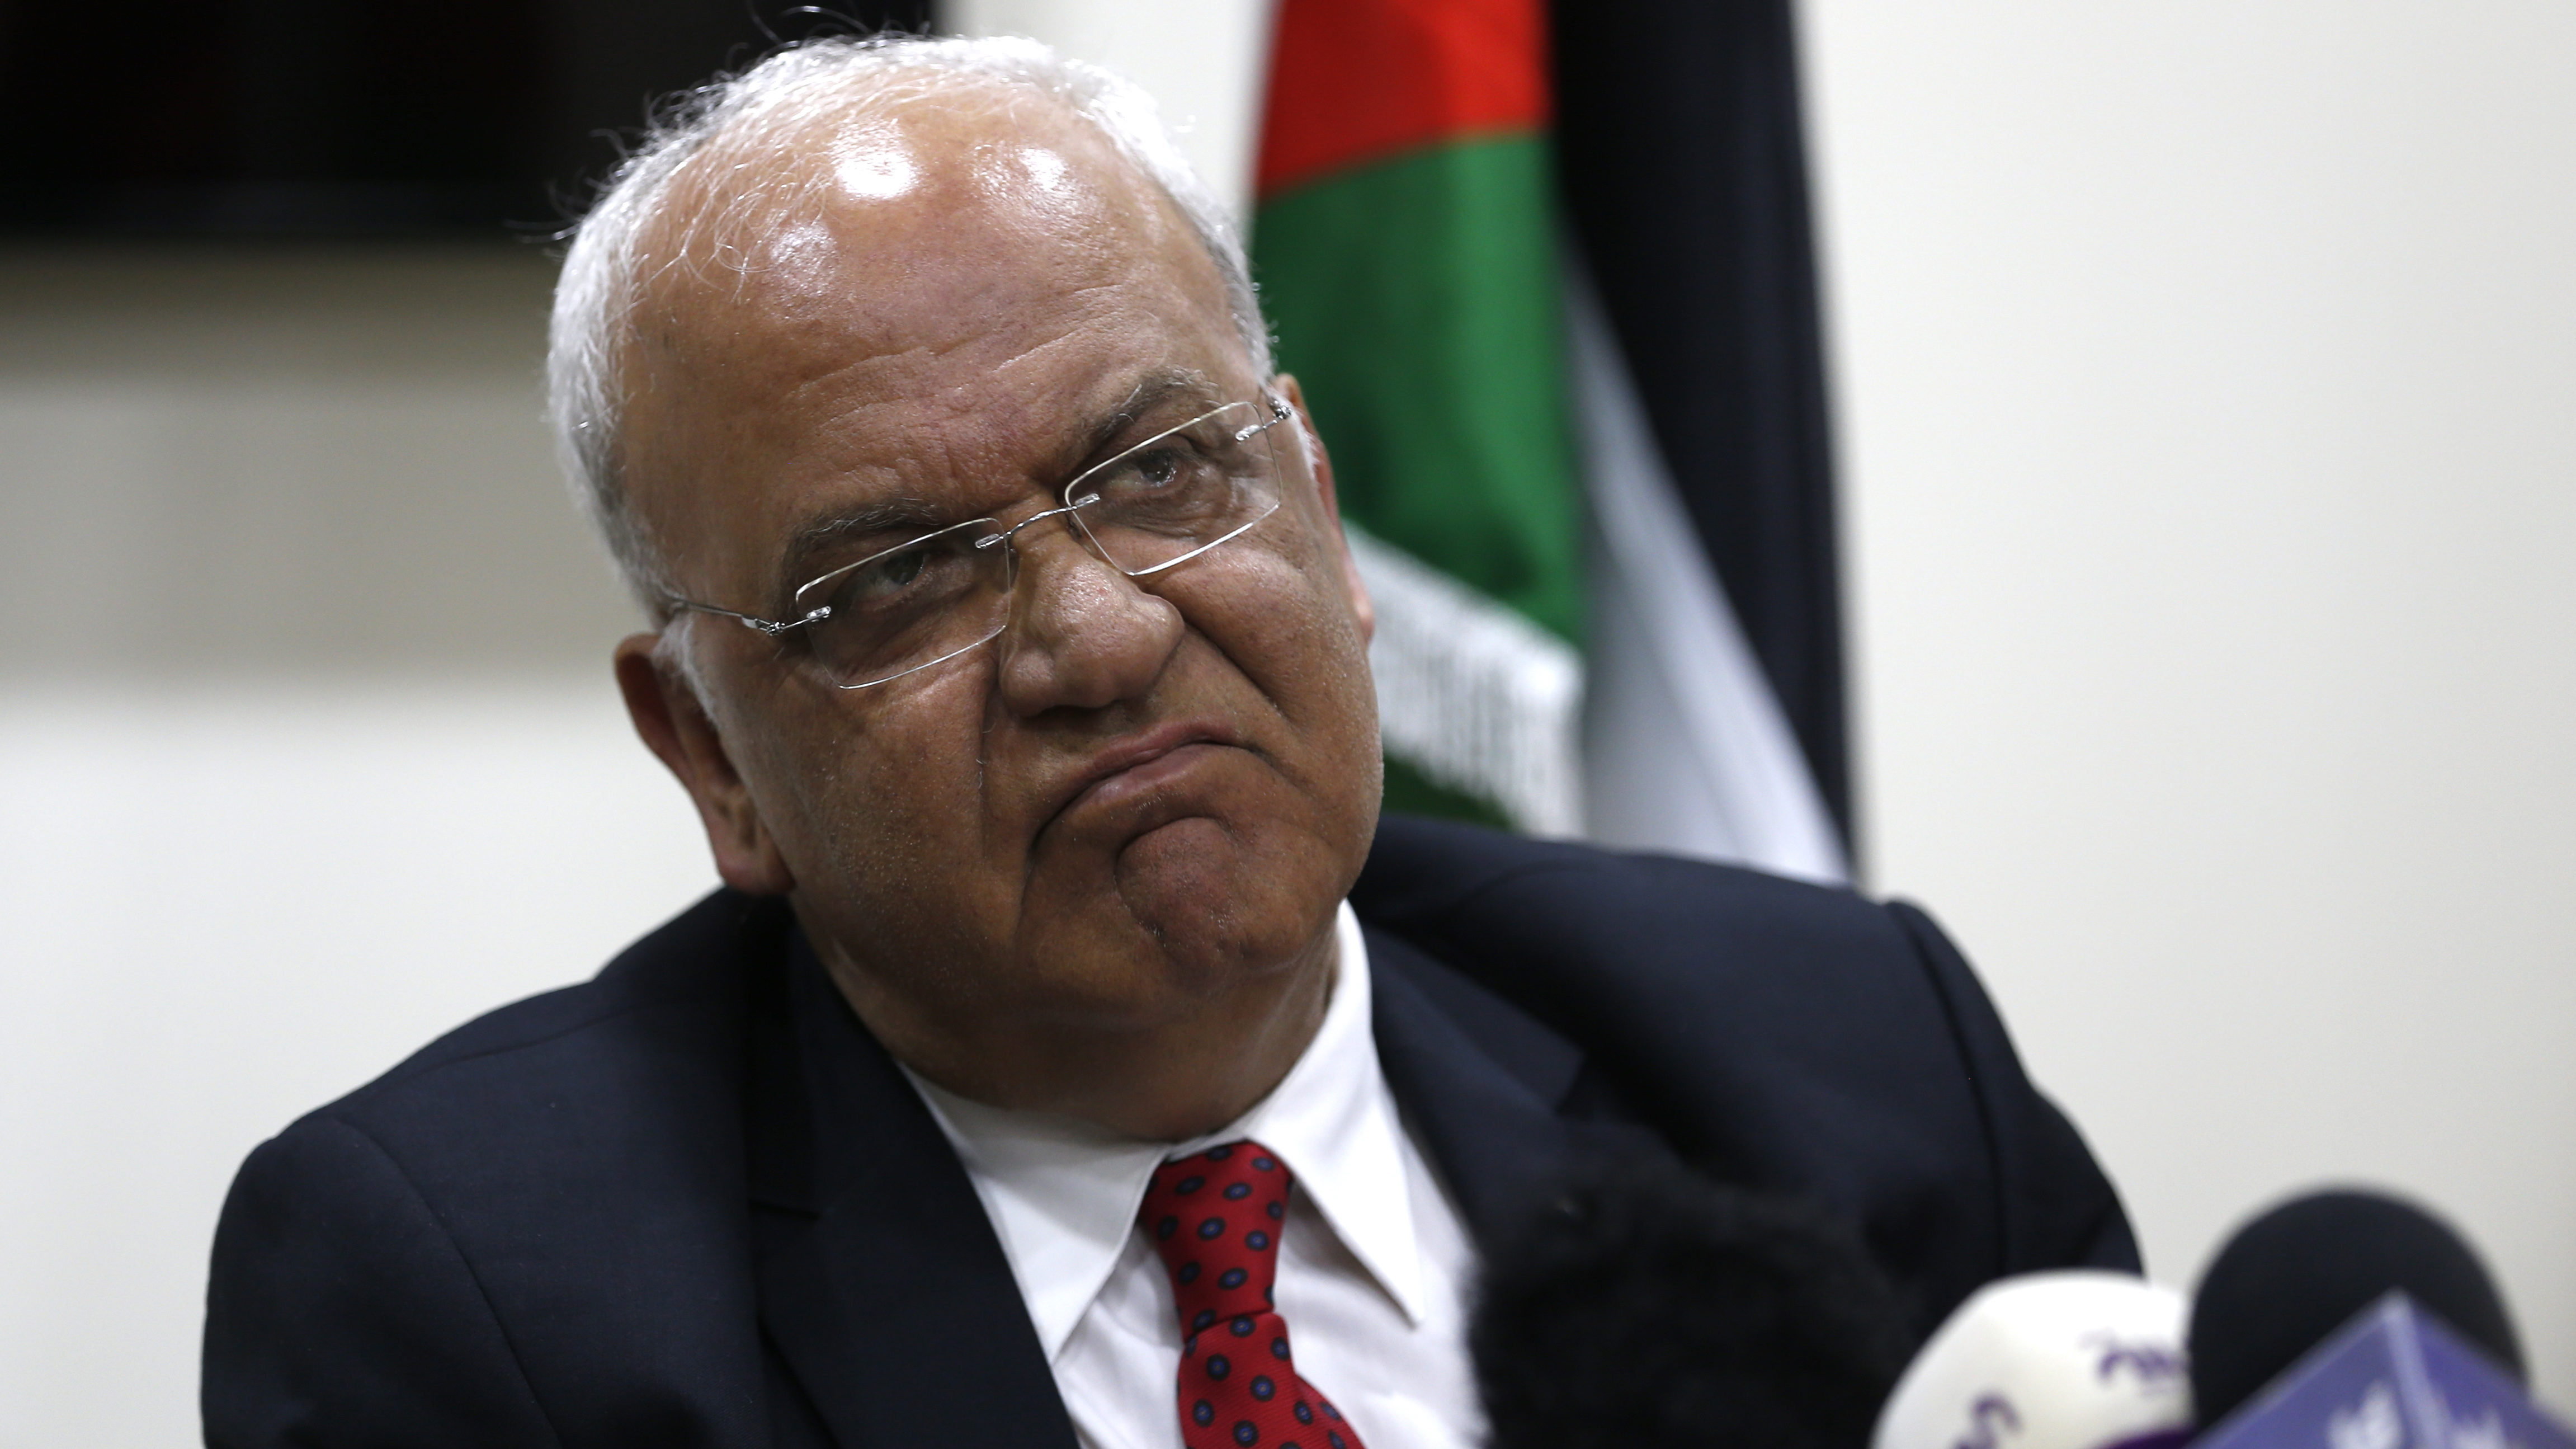 Saeb the Noncorrupt Palestinian